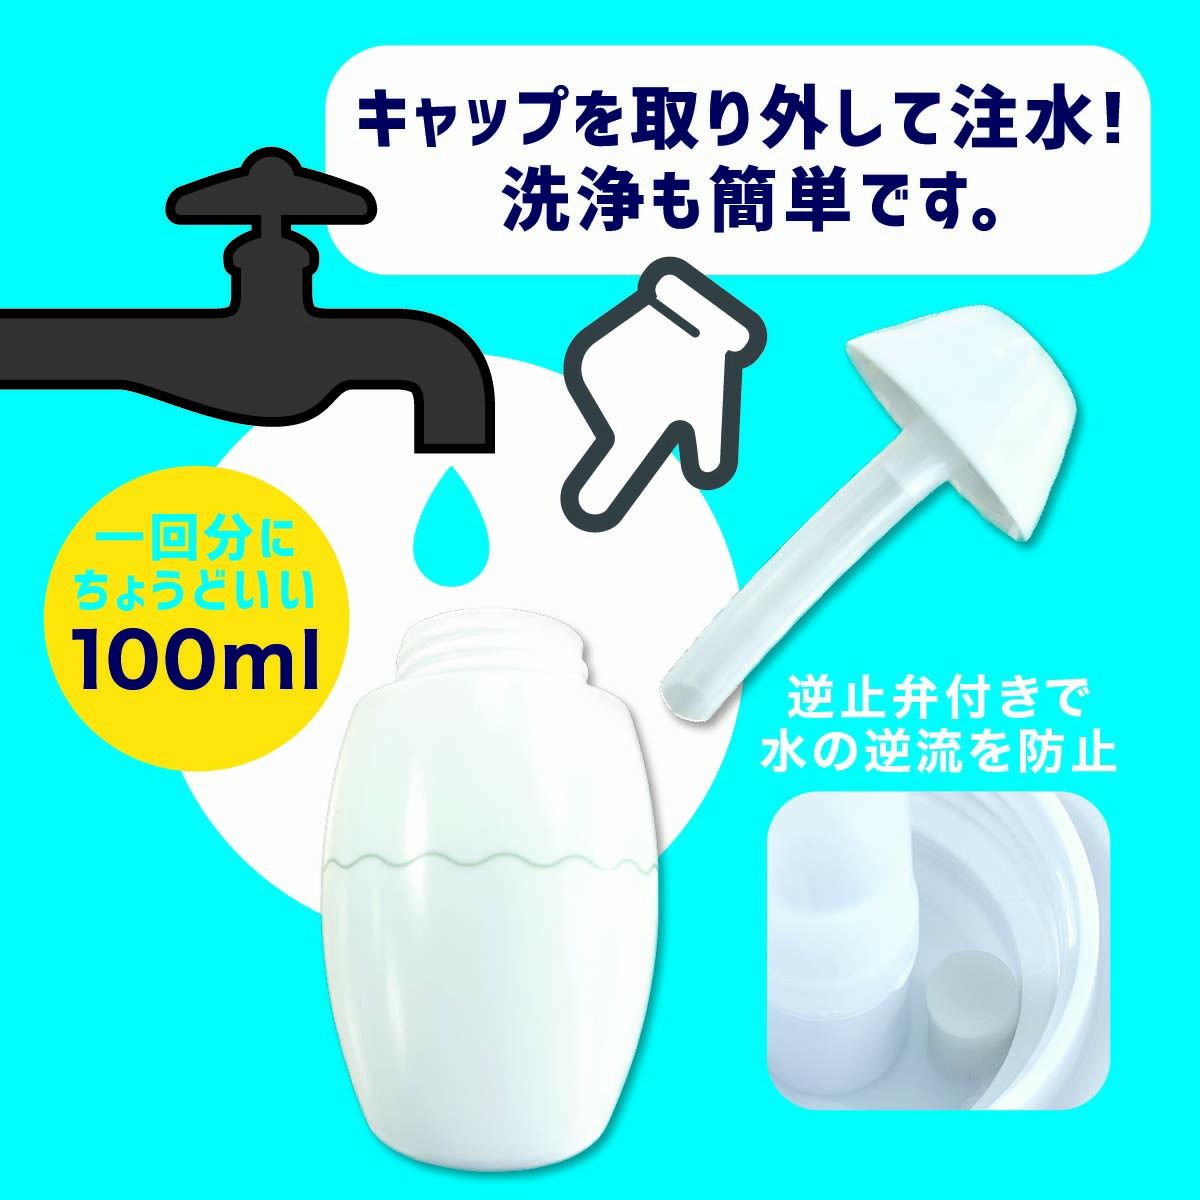 スキ間シャワー 歯ブラシ 歯ブラシ手動水流 歯ブラシ携帯 歯磨き改善 歯磨き対策